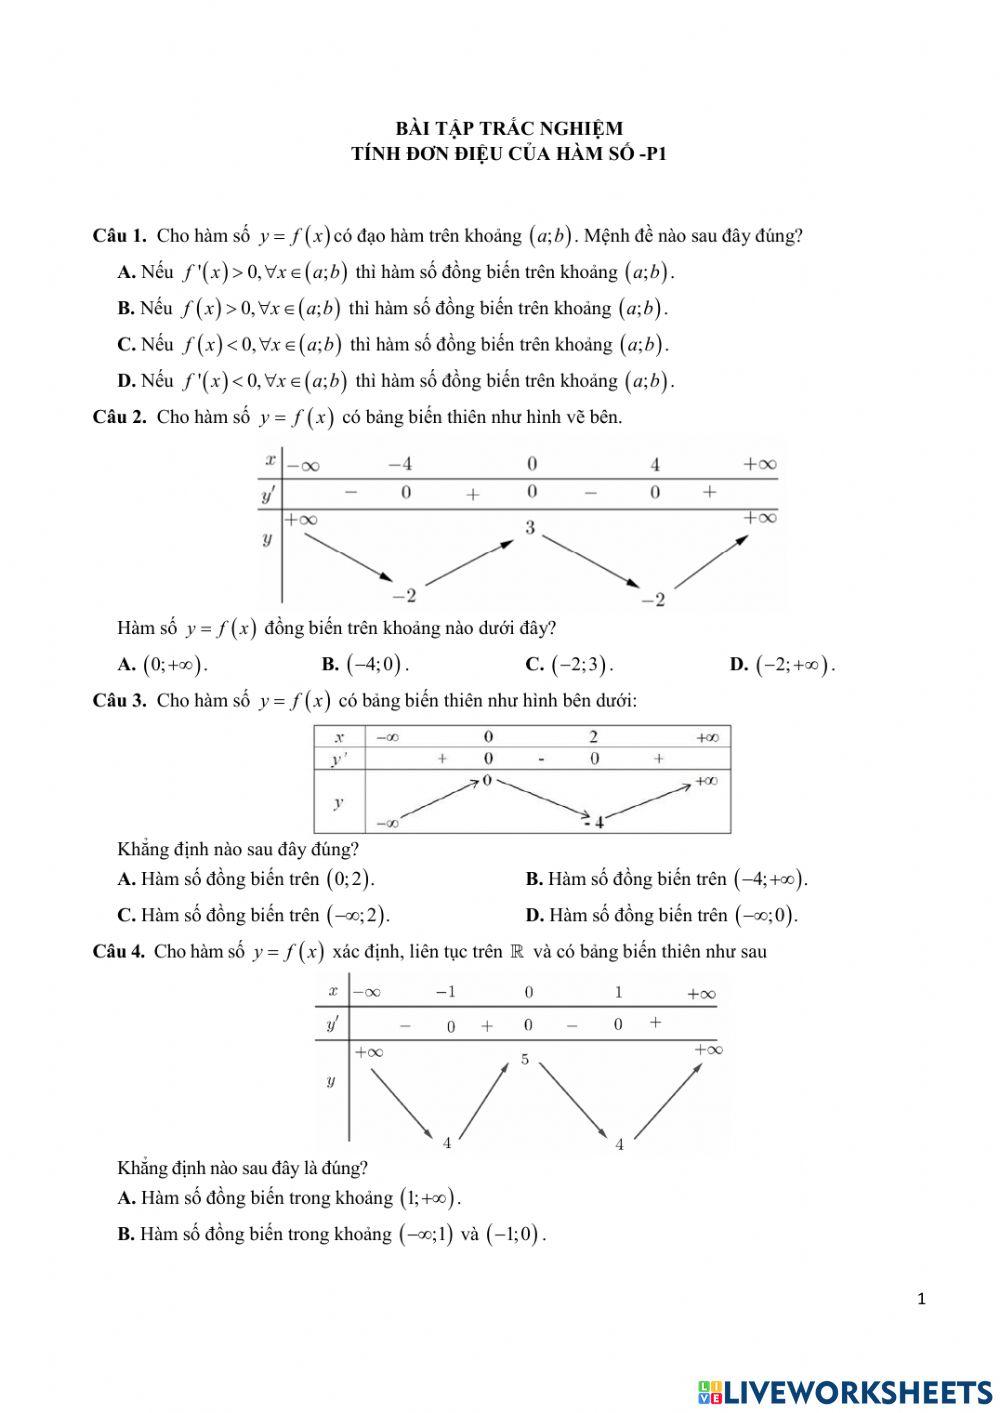 Bài tập trắc nghiệm-Tính đơn điệu của hàm số